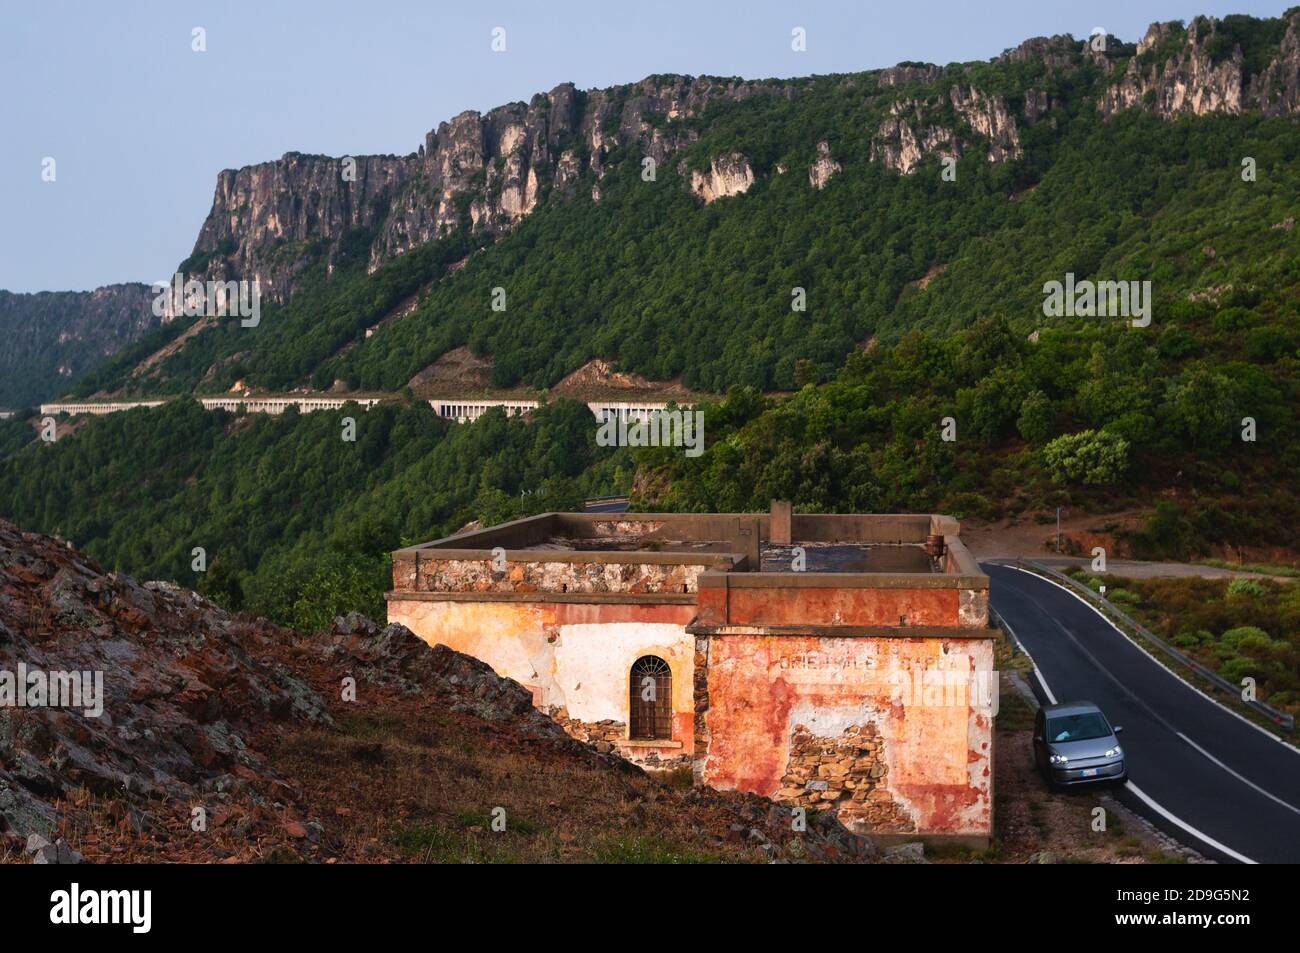 Maison de travailleur routier sur une route de montagne en Sardaigne, Italie. Petite voiture parkes sur le côté. Jour de pluie dans la soirée Banque D'Images